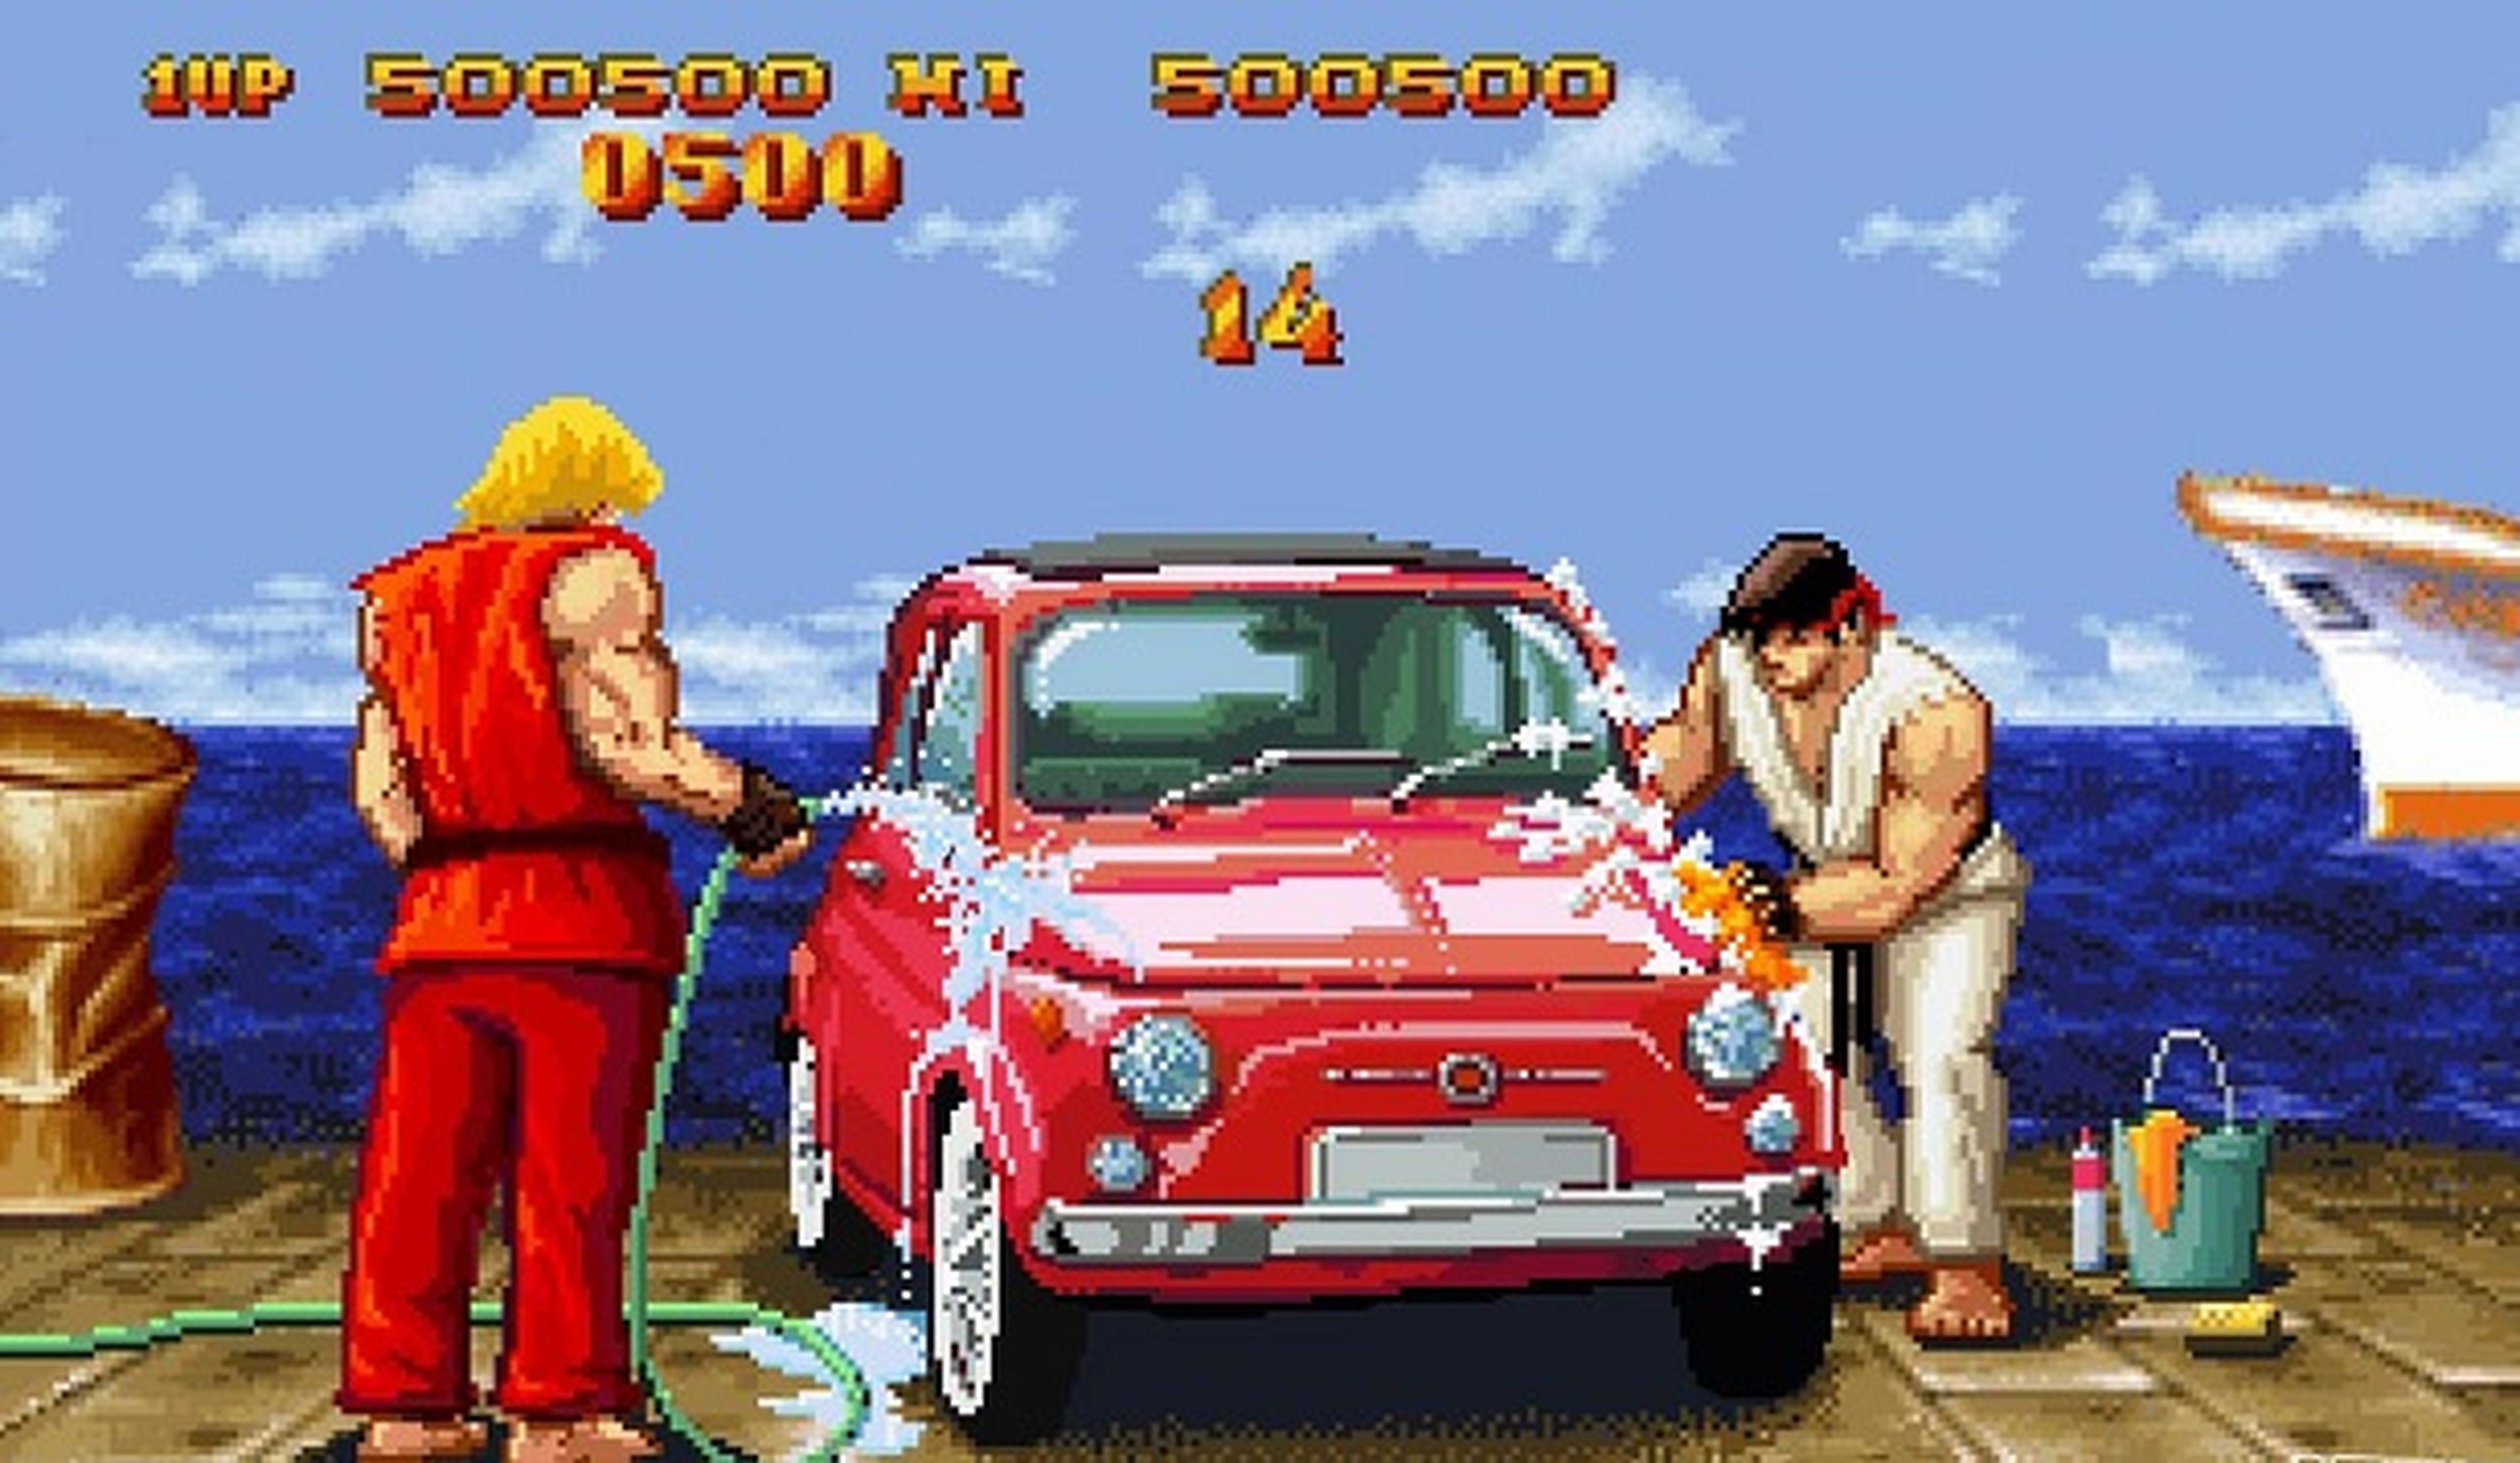 Los mejores fans de Street Fighter destrozando coches